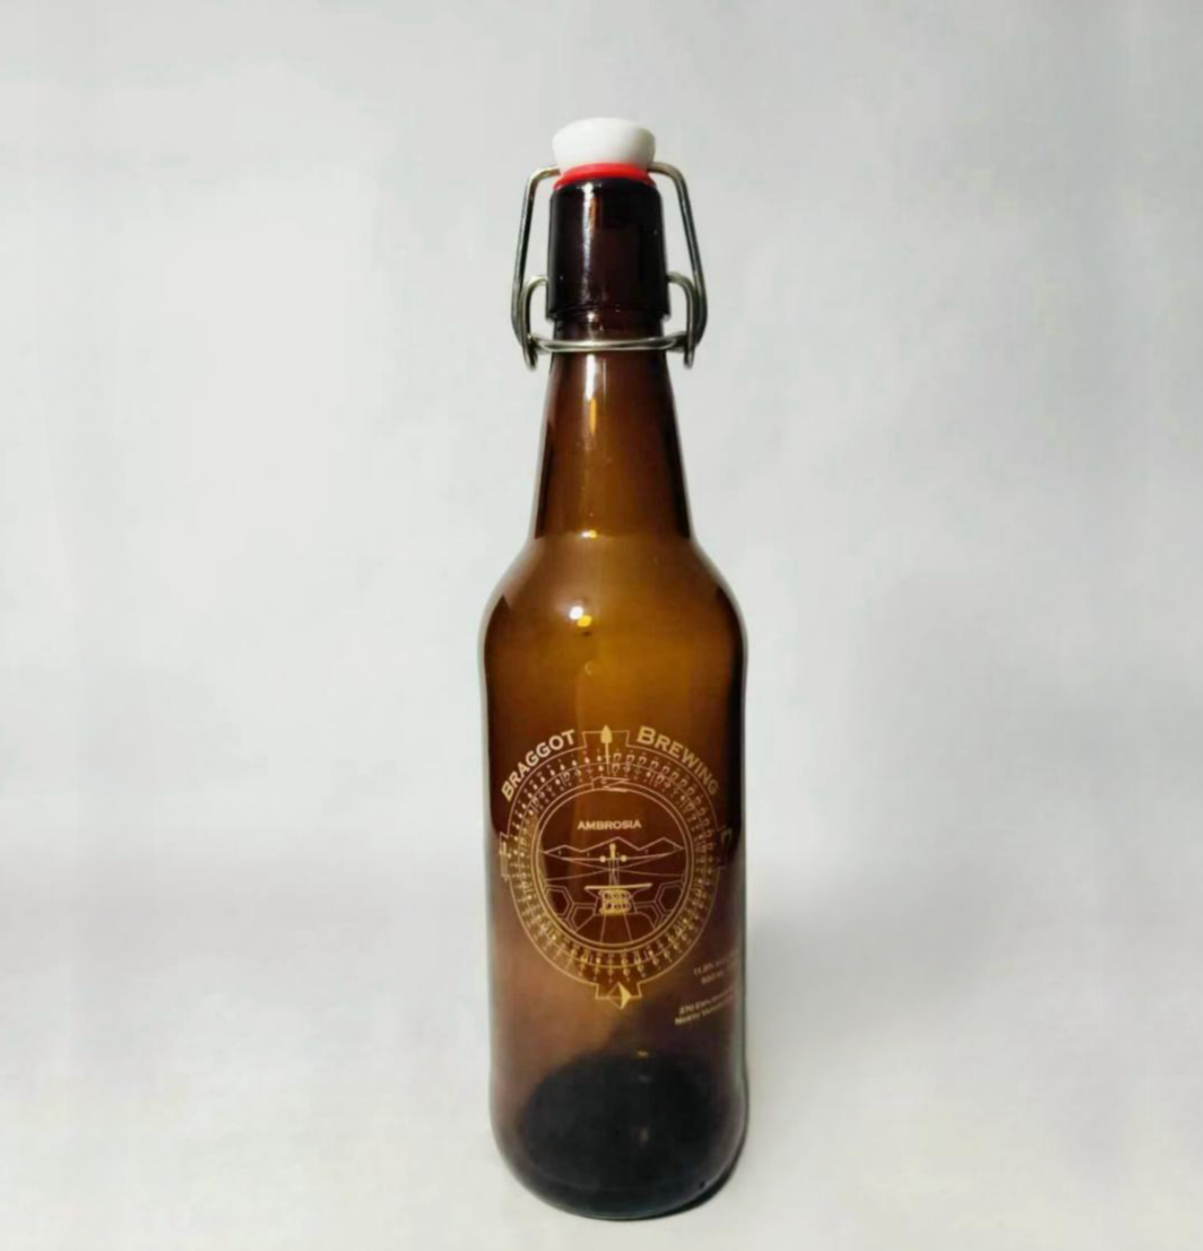 Glass Swing Top Beer Bottles, 1 Litter 32 oz, Flip Top Brewing